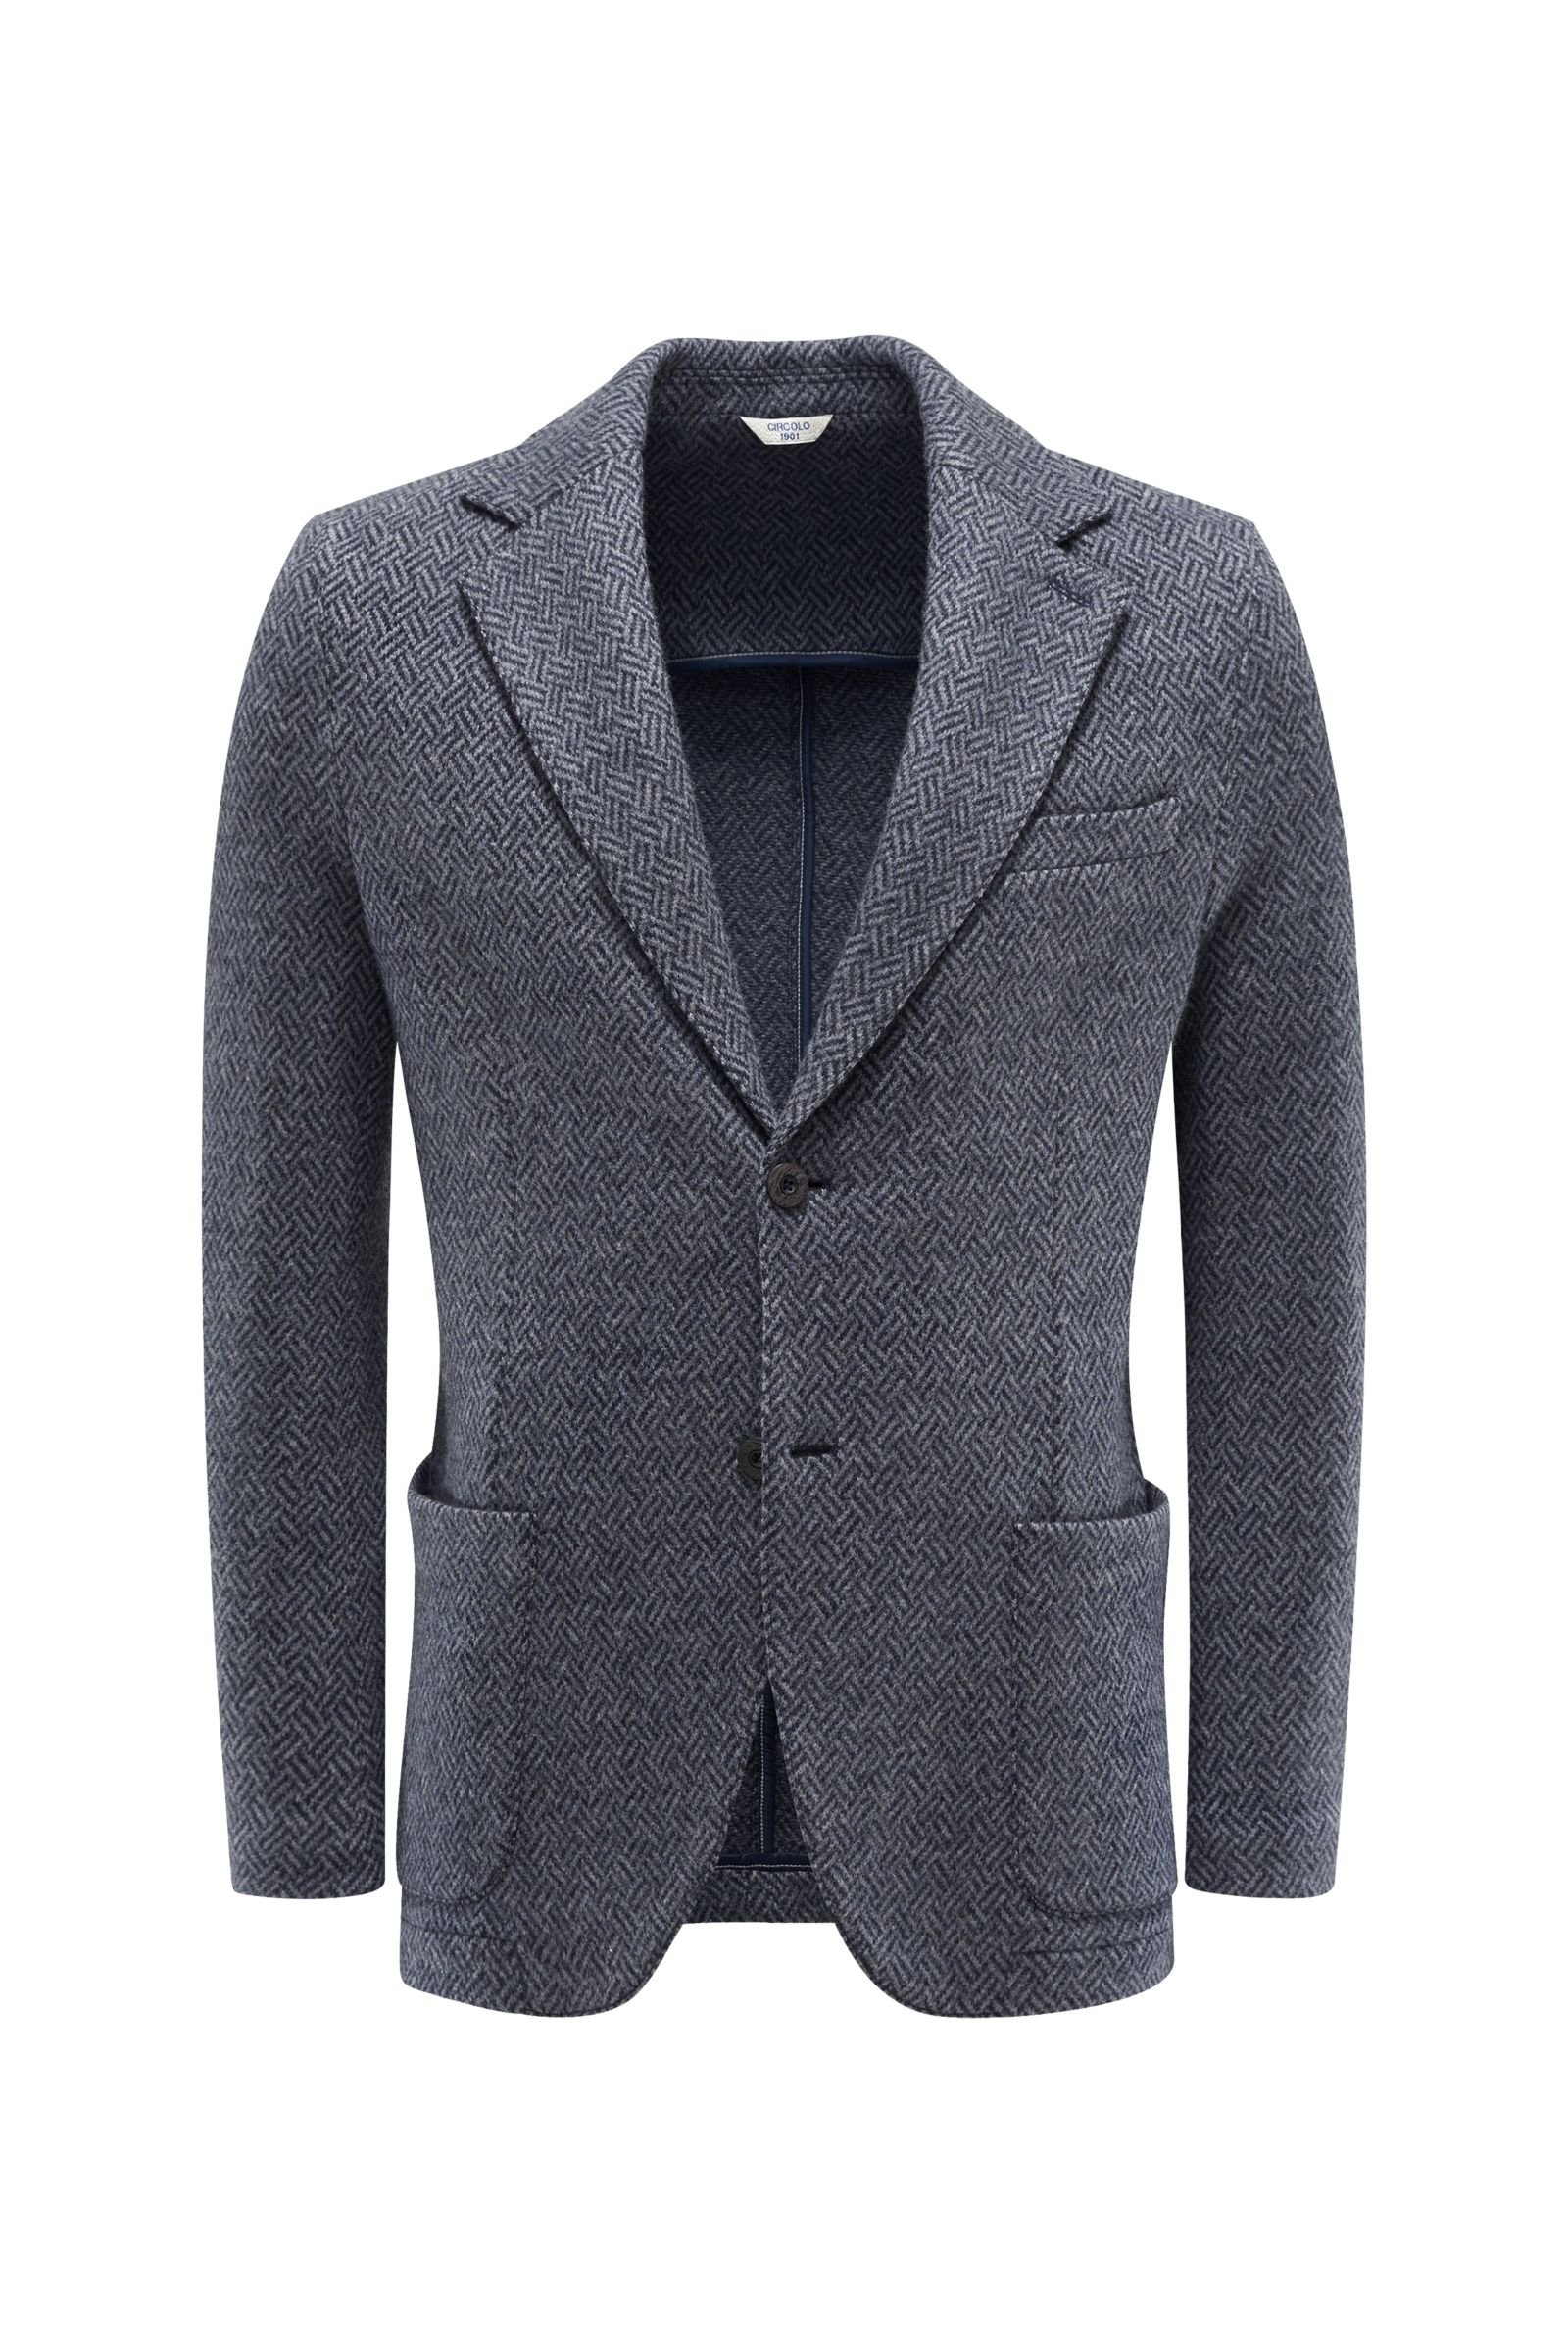 Jersey blazer navy/grey patterned